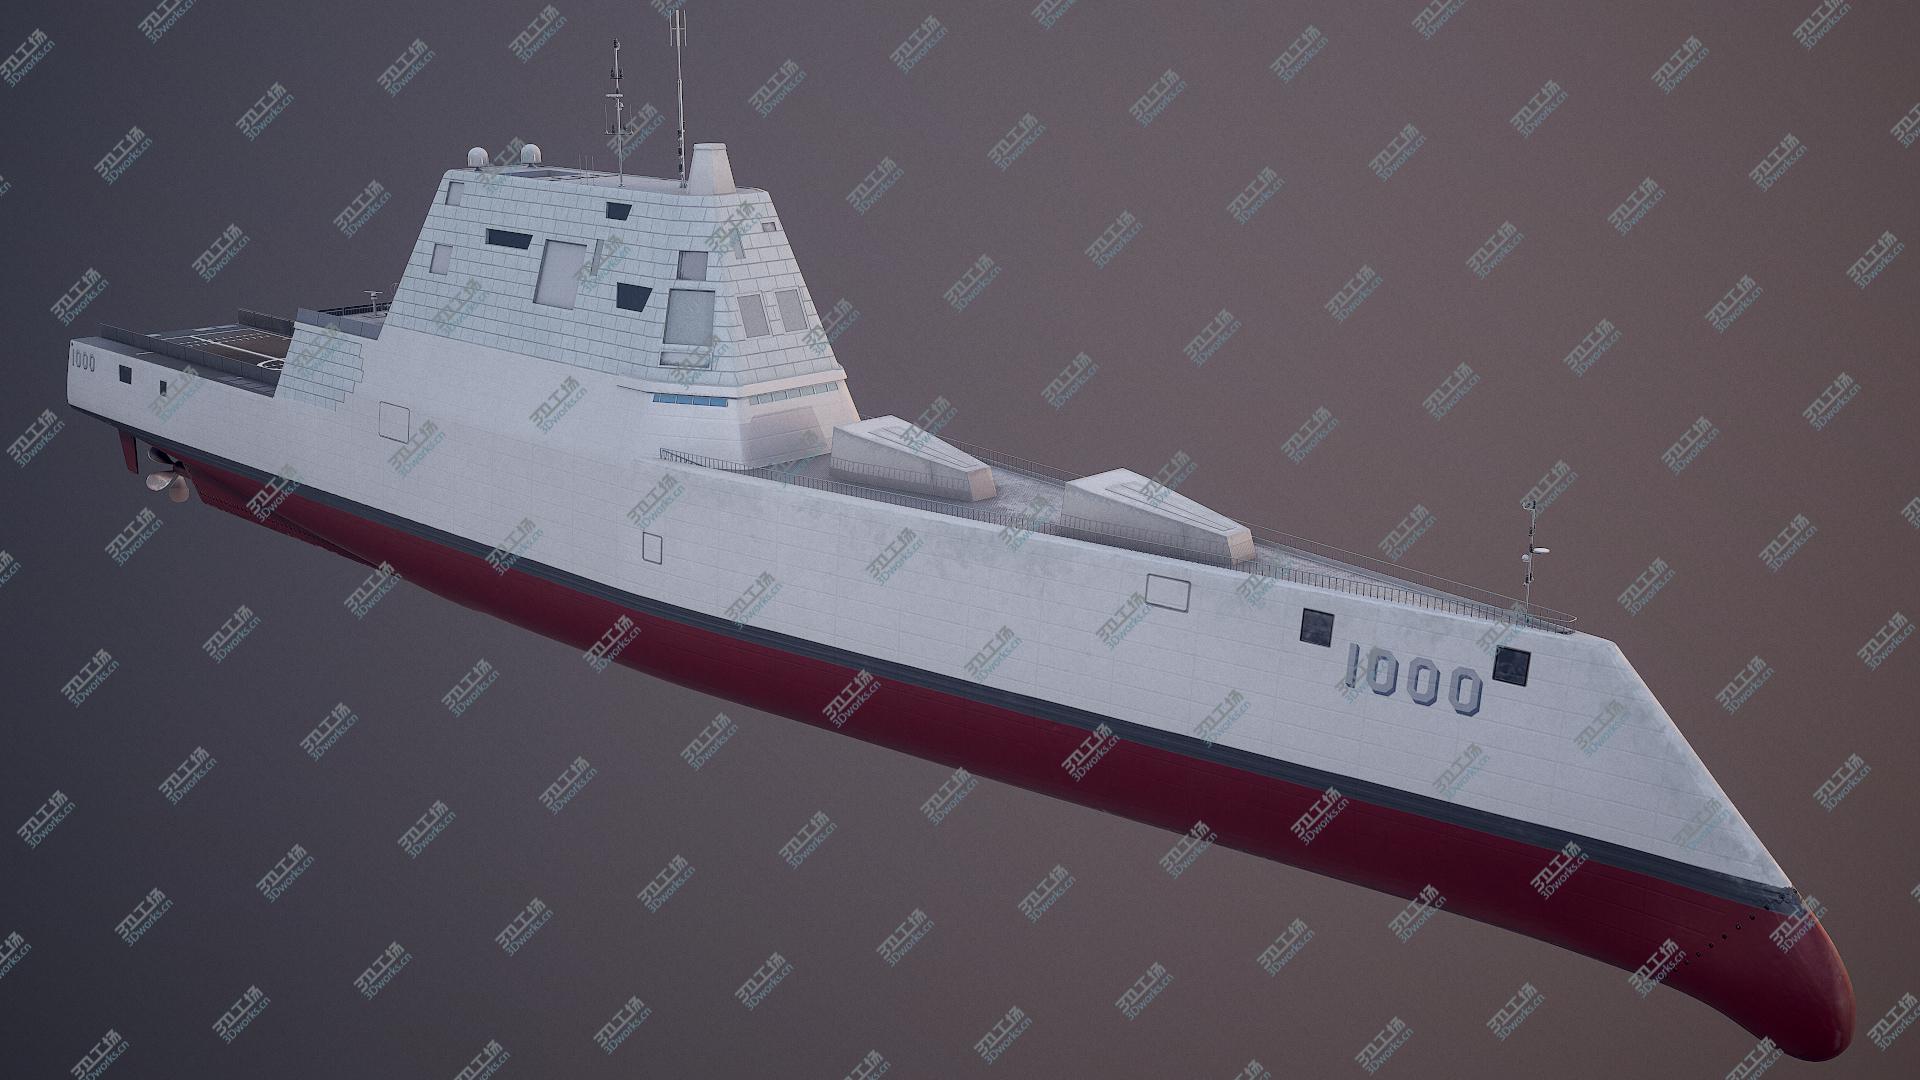 images/goods_img/20210319/Zumwalt Class Destroyer USS DDG-1000 3D model/2.jpg